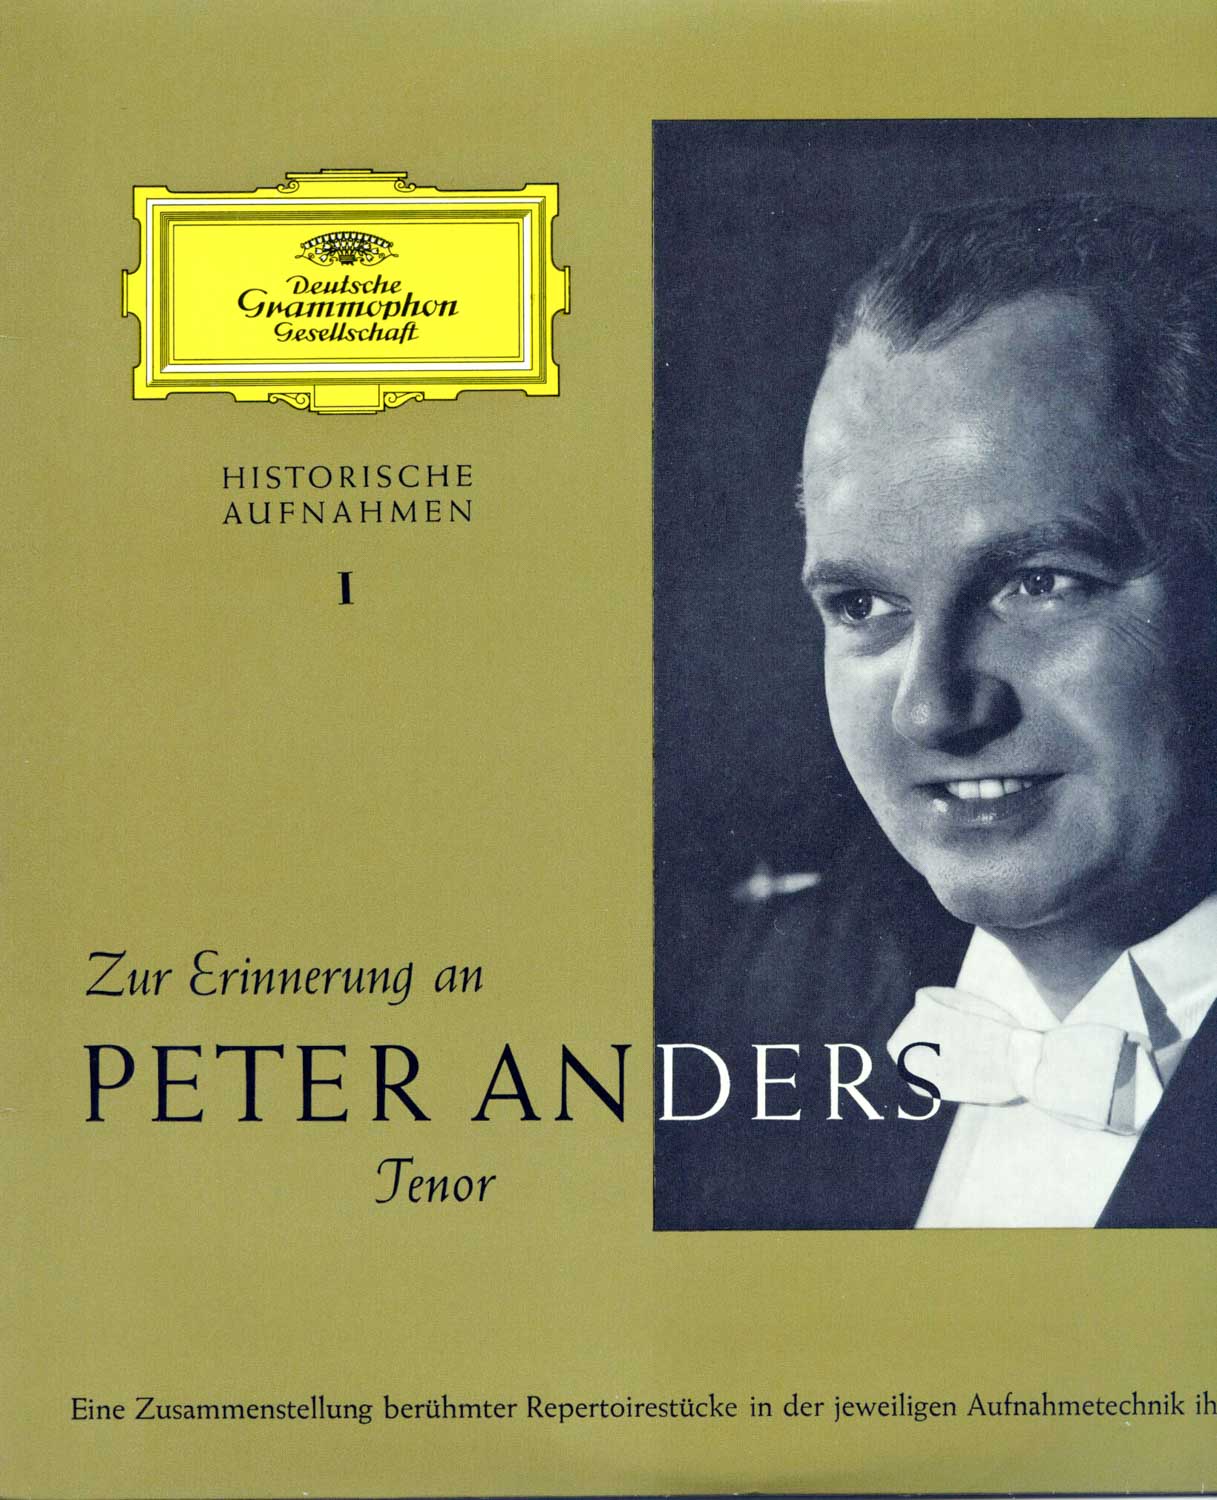 Peter Anders  Zur Erinnerung an Peter Anders (17 201 LPE)  *LP 10'' (Vinyl)*. 